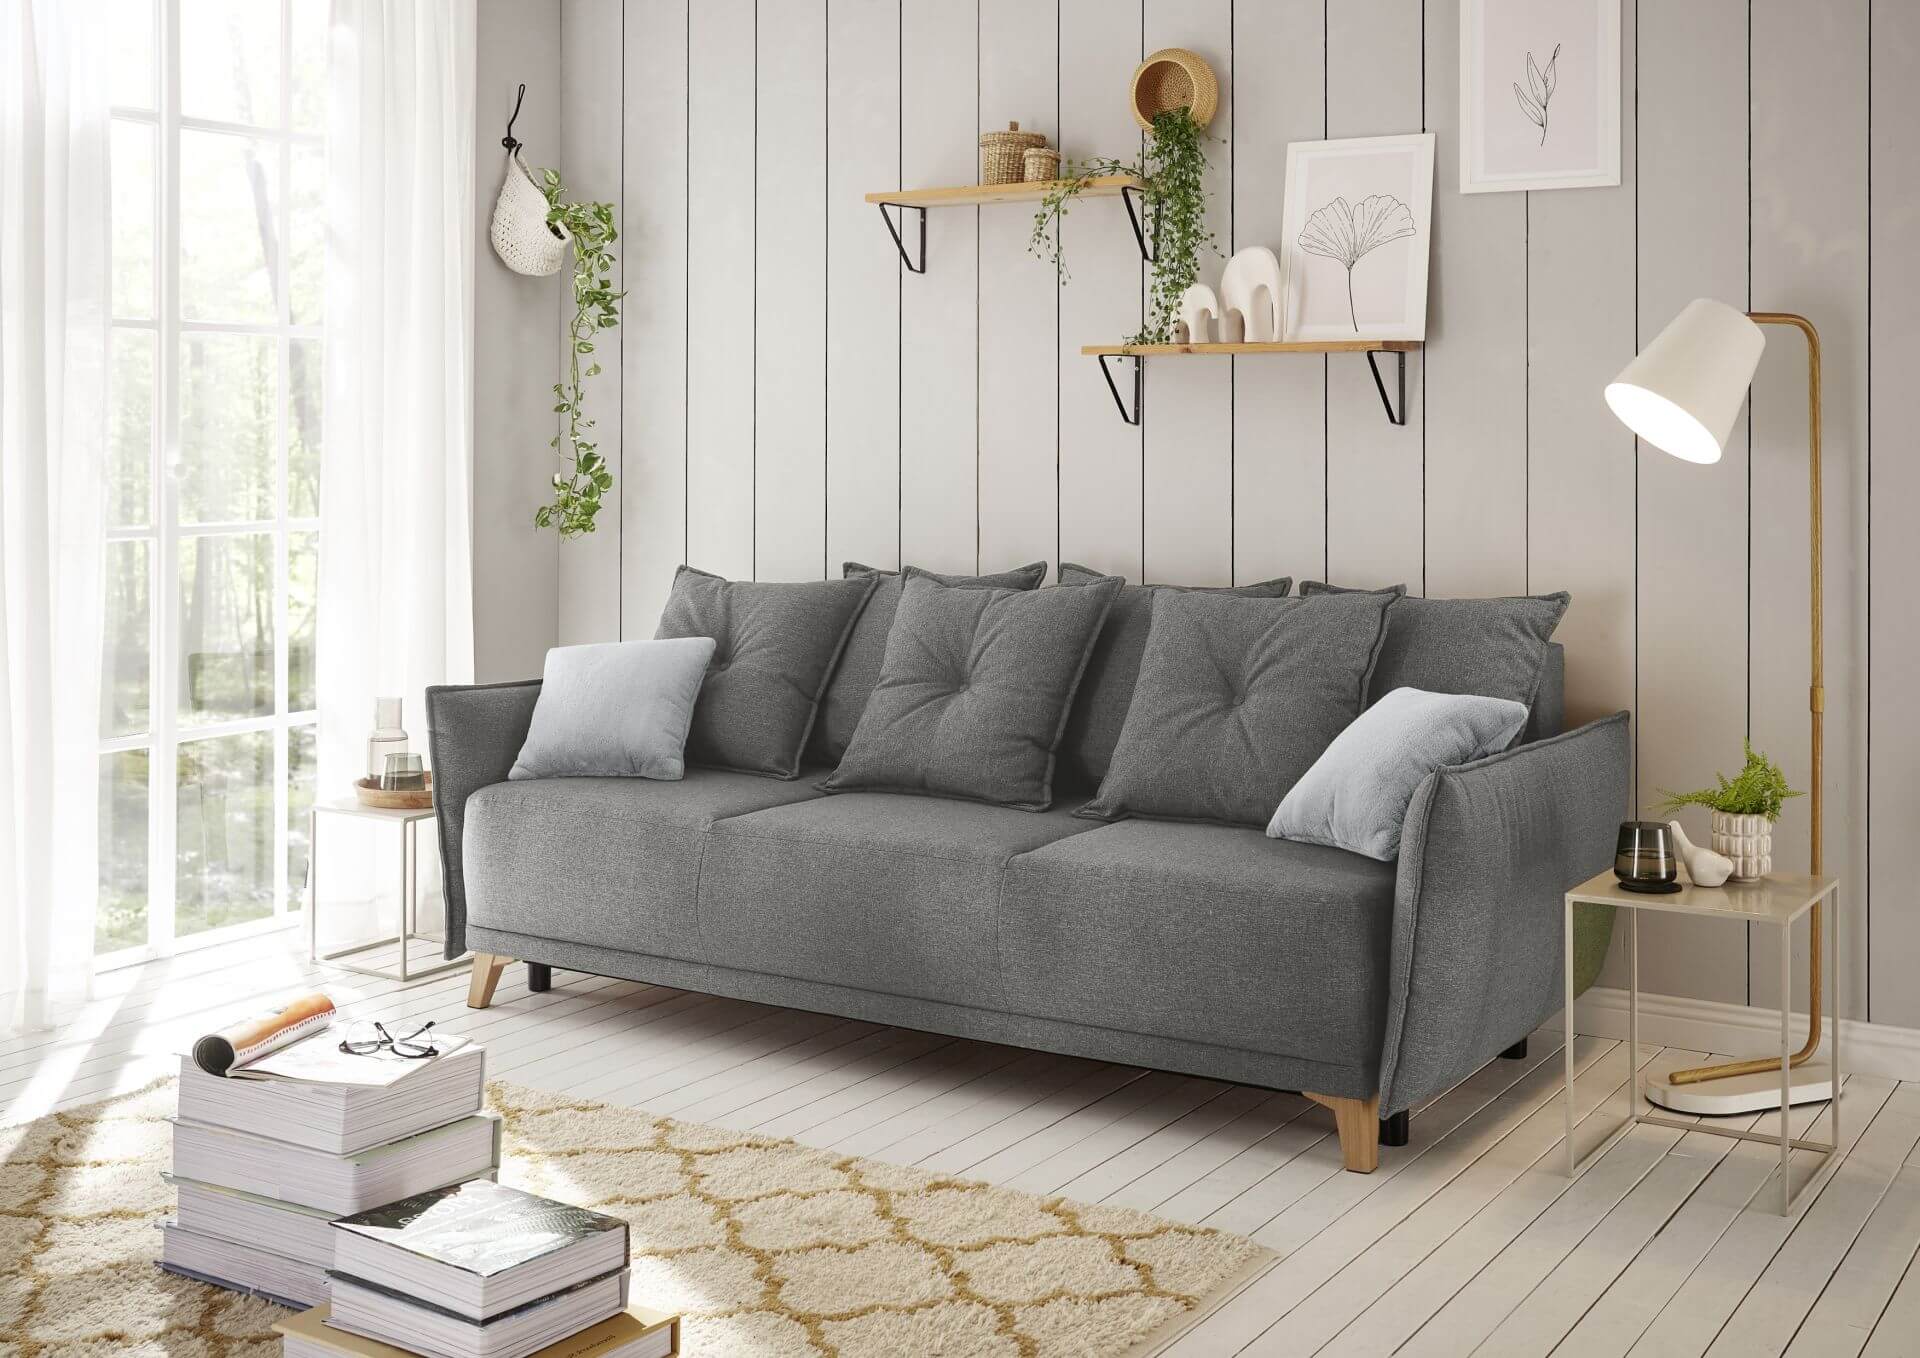 Canapé-lit PAMPLONA de style cottage, couleur graphite, avec fonction sommeil 